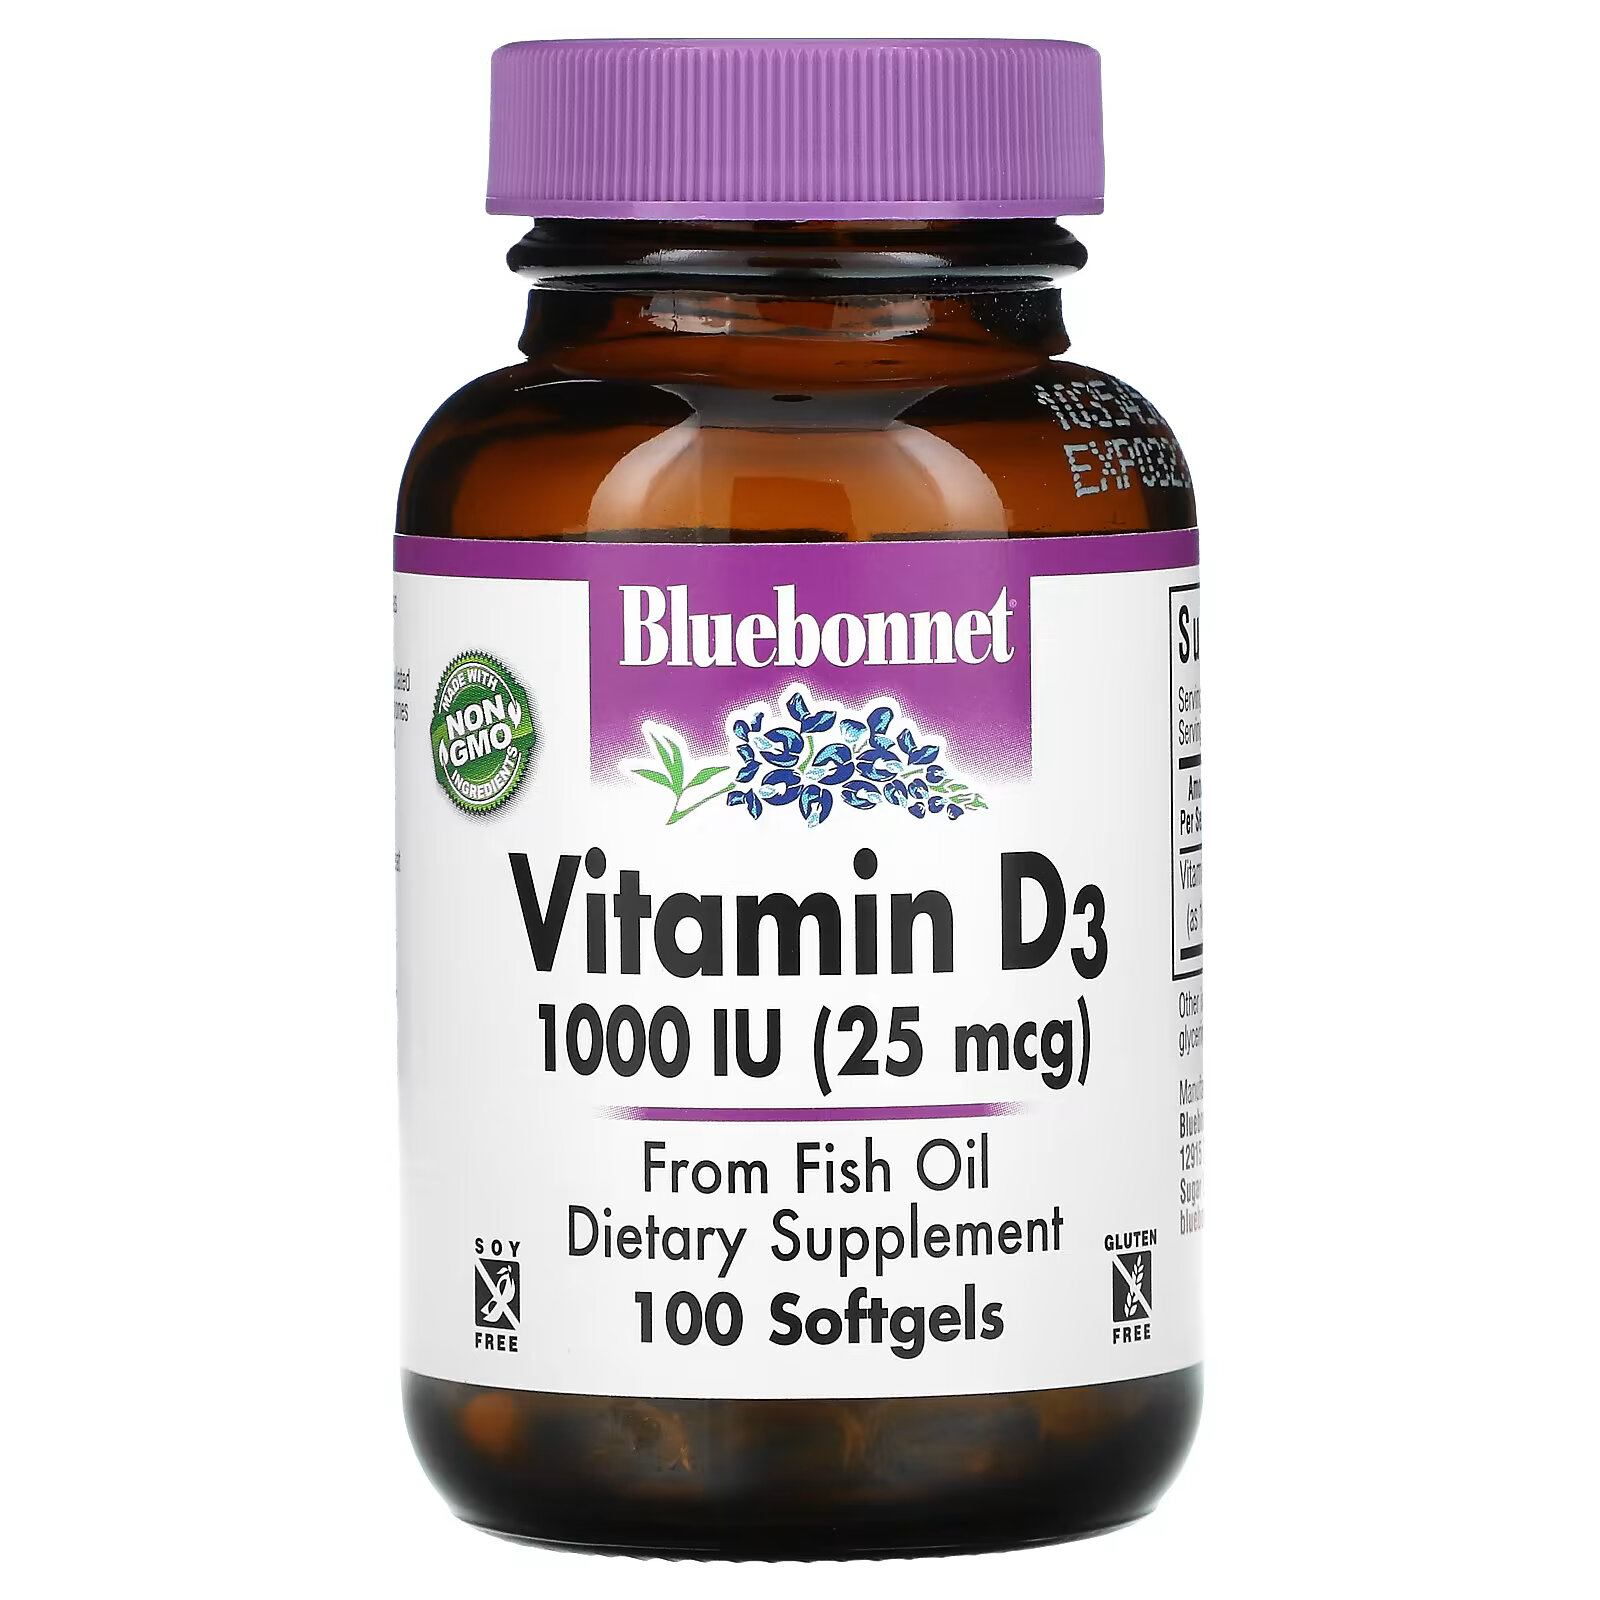 Bluebonnet Nutrition, Vitamin D3, 1,000 IU (25 mcg), 100 Softgels finaflex pure vitamin d3 50 mcg 2 000 iu 100 softgels